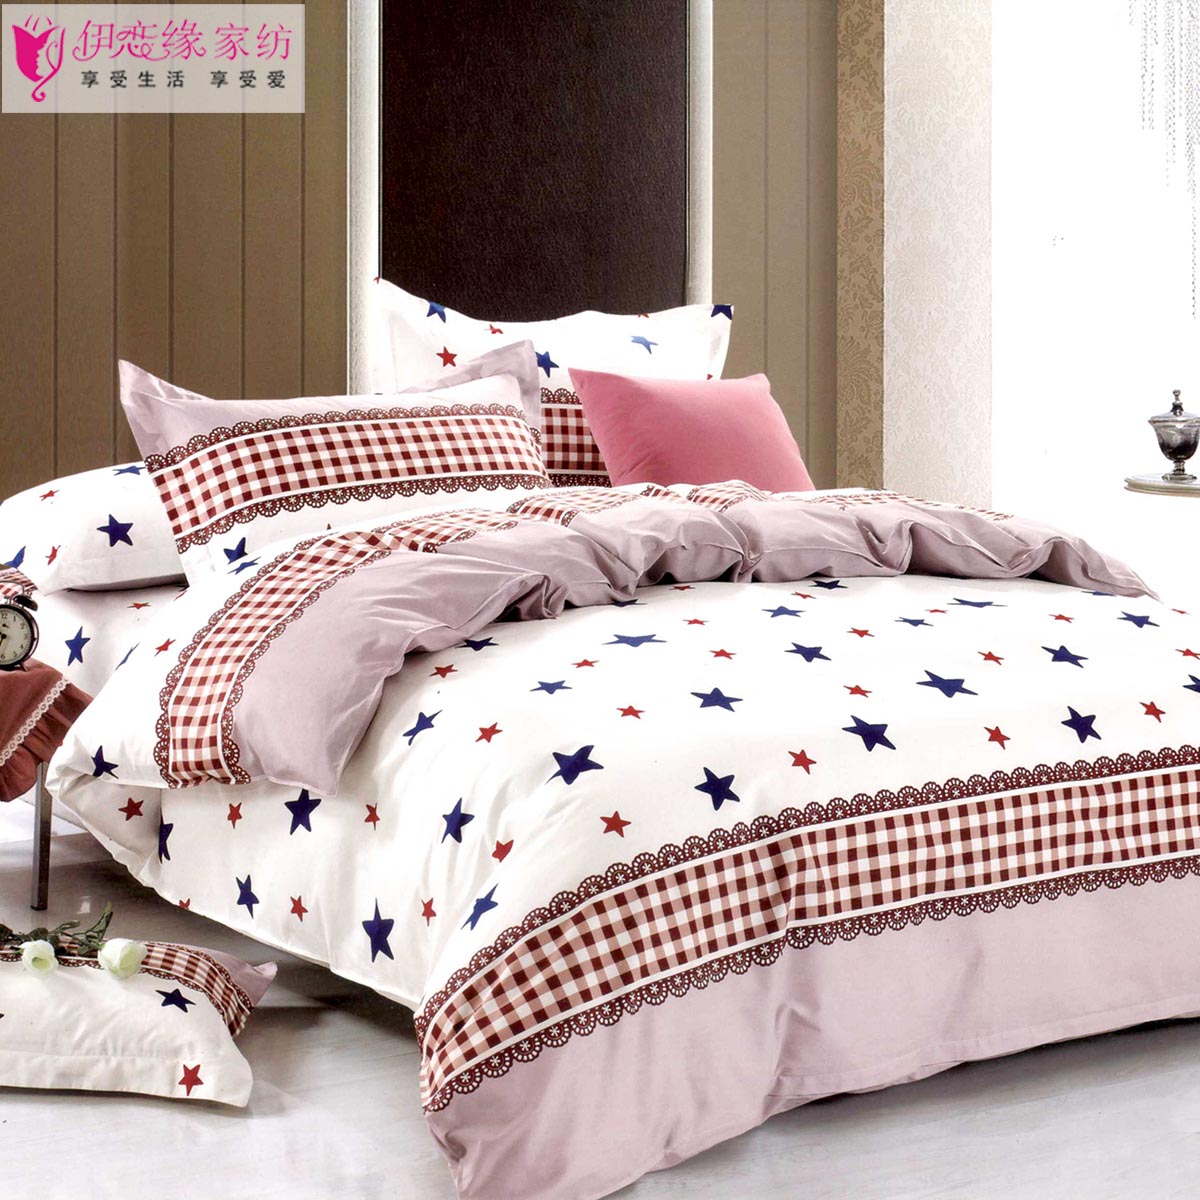 全棉活性 圆床床上用品套件 床单被套四件套 星彩时空 多款可定做